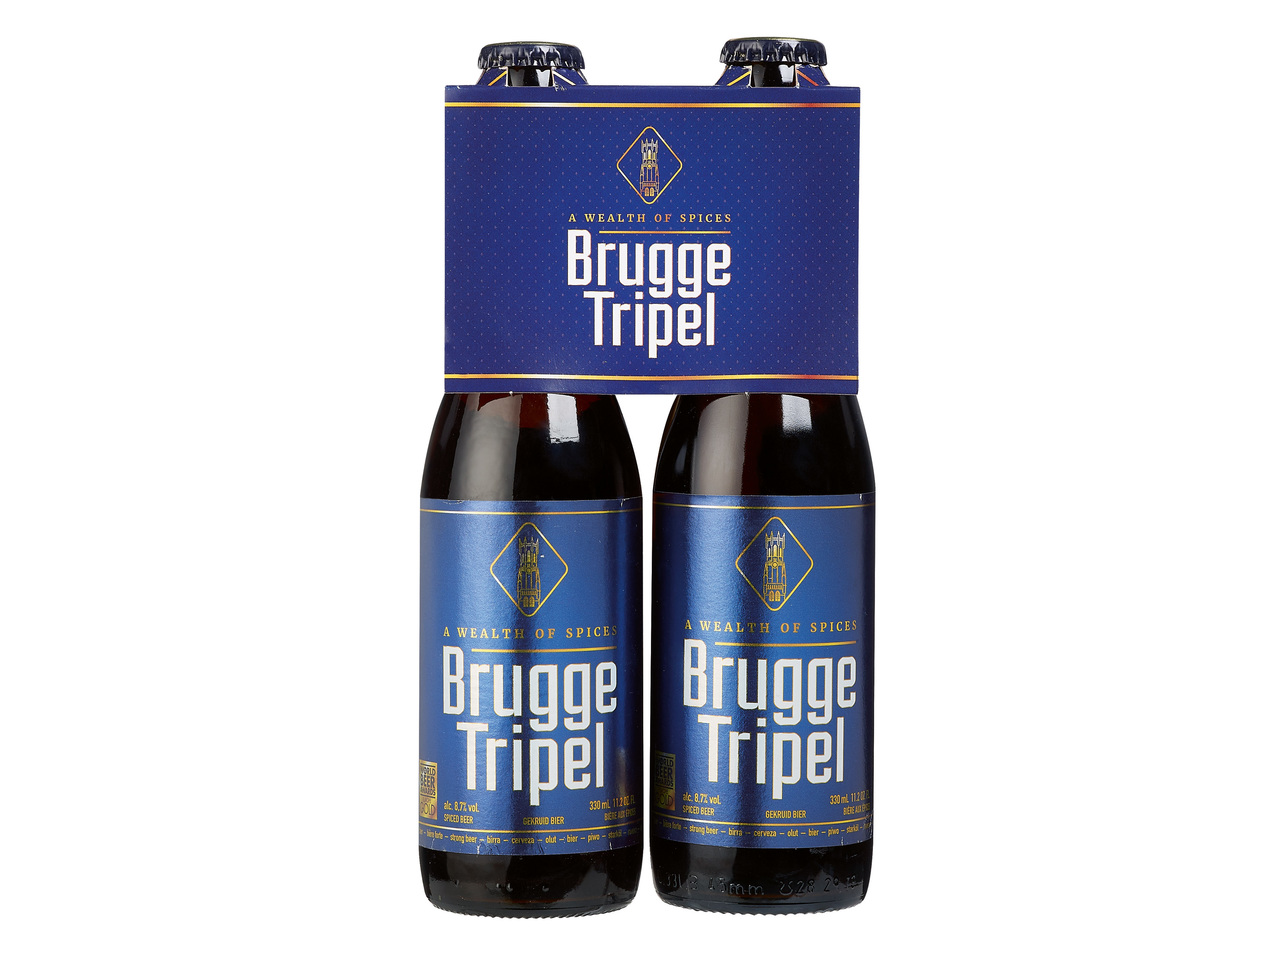 Brugge tripel Blond